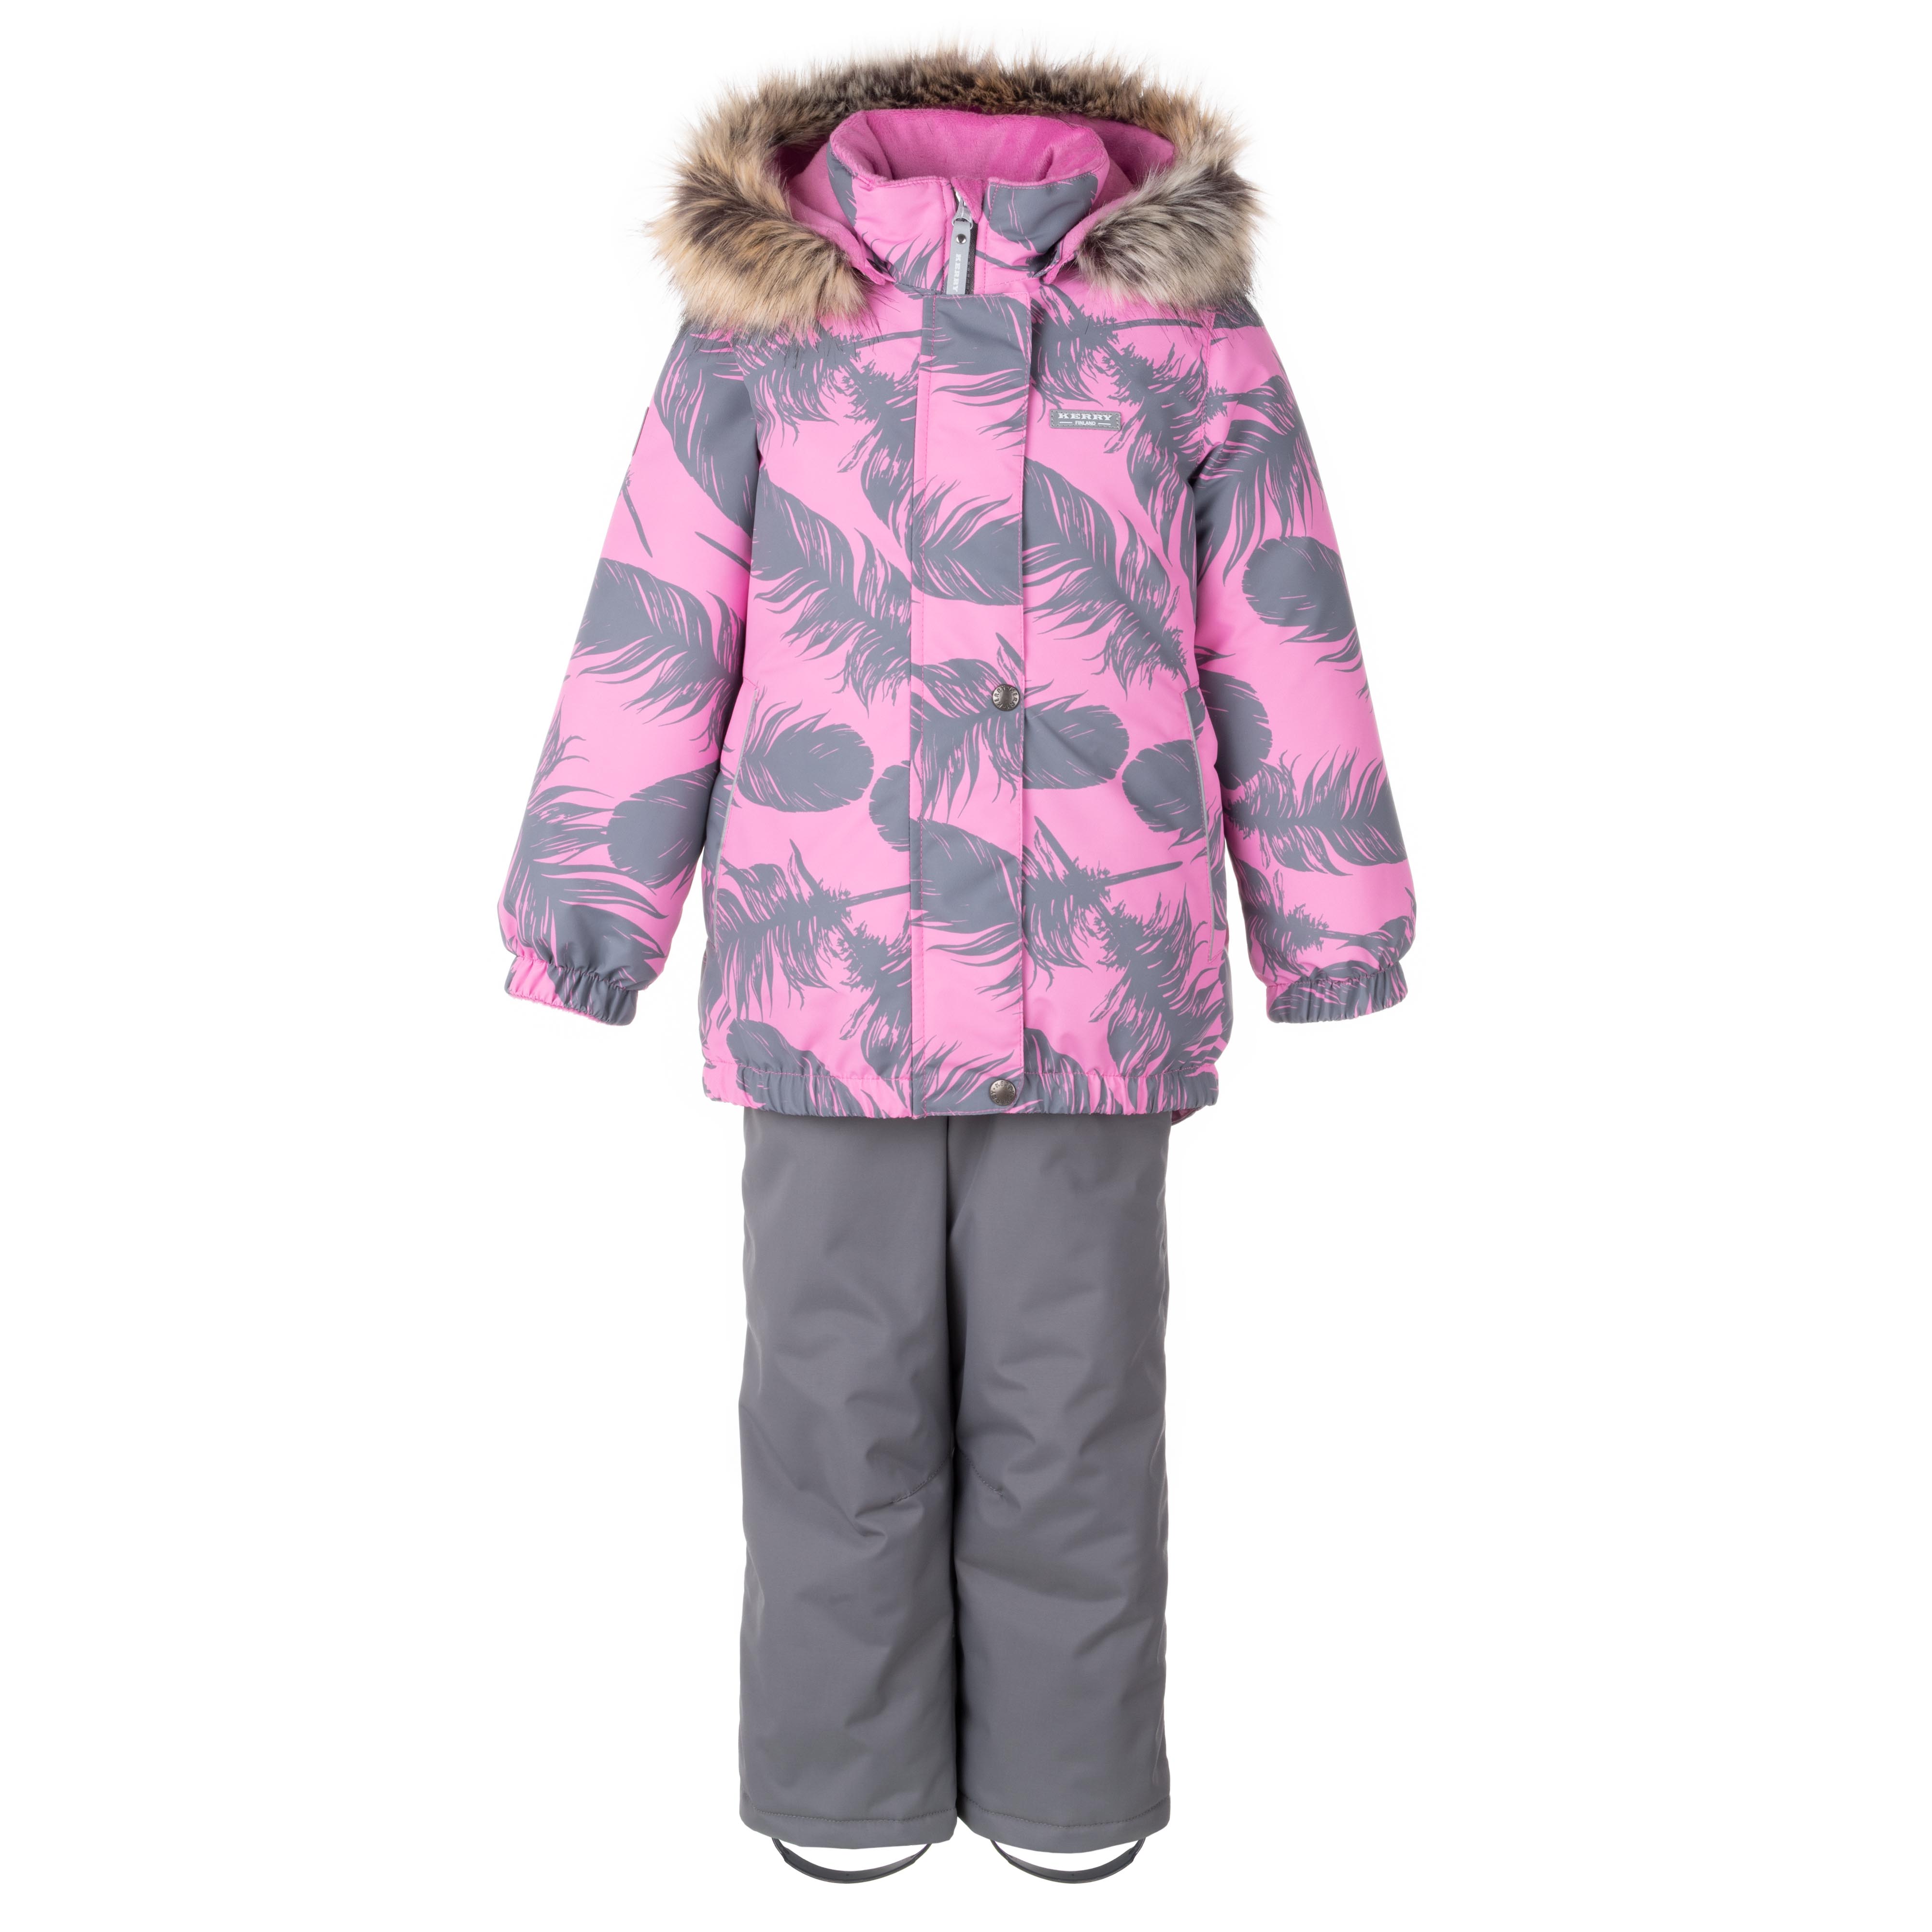 Комплект верхней одежды KERRY K23420 A, серый, розовый, 140